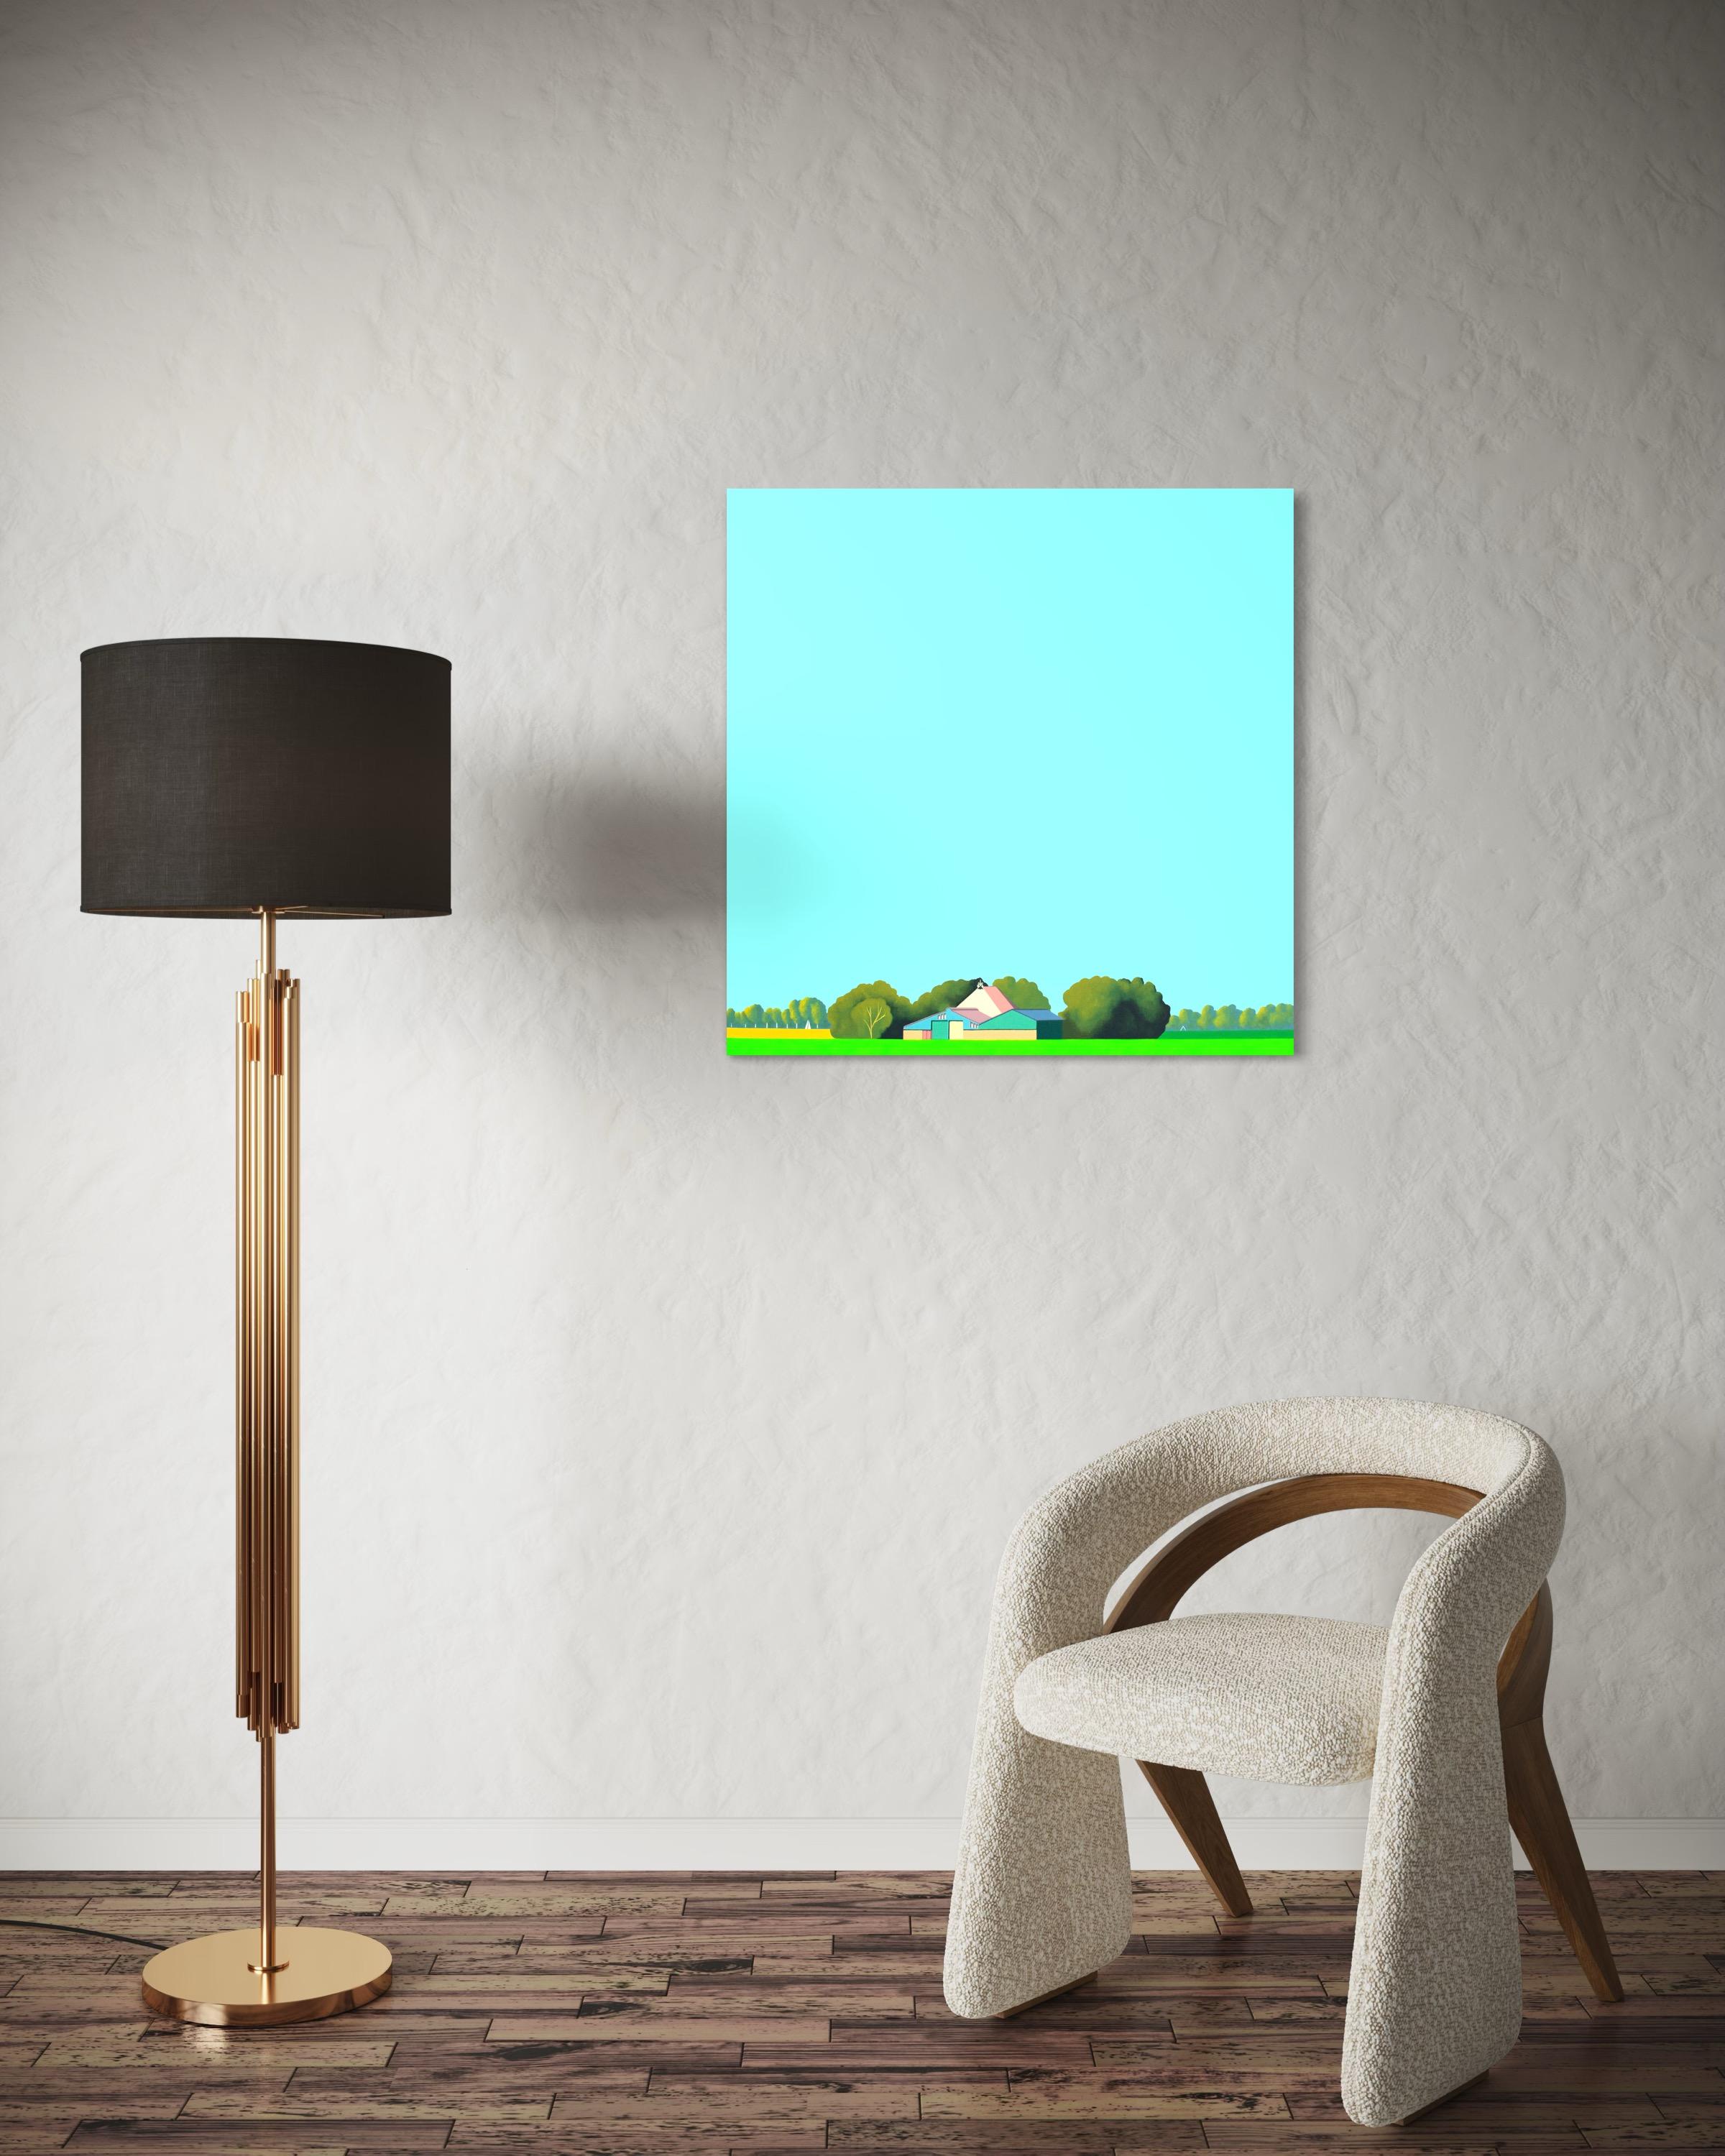 Dieses schöne Gemälde von Jeroen Allart ist Teil seiner minimalistischen Landschaftsmalerei, die er in seinem Heimatland, den Niederlanden, angefertigt hat.

IA Farm steht vor Ihnen am Horizont. Eine Windmühle durchschneidet majestätisch den blauen